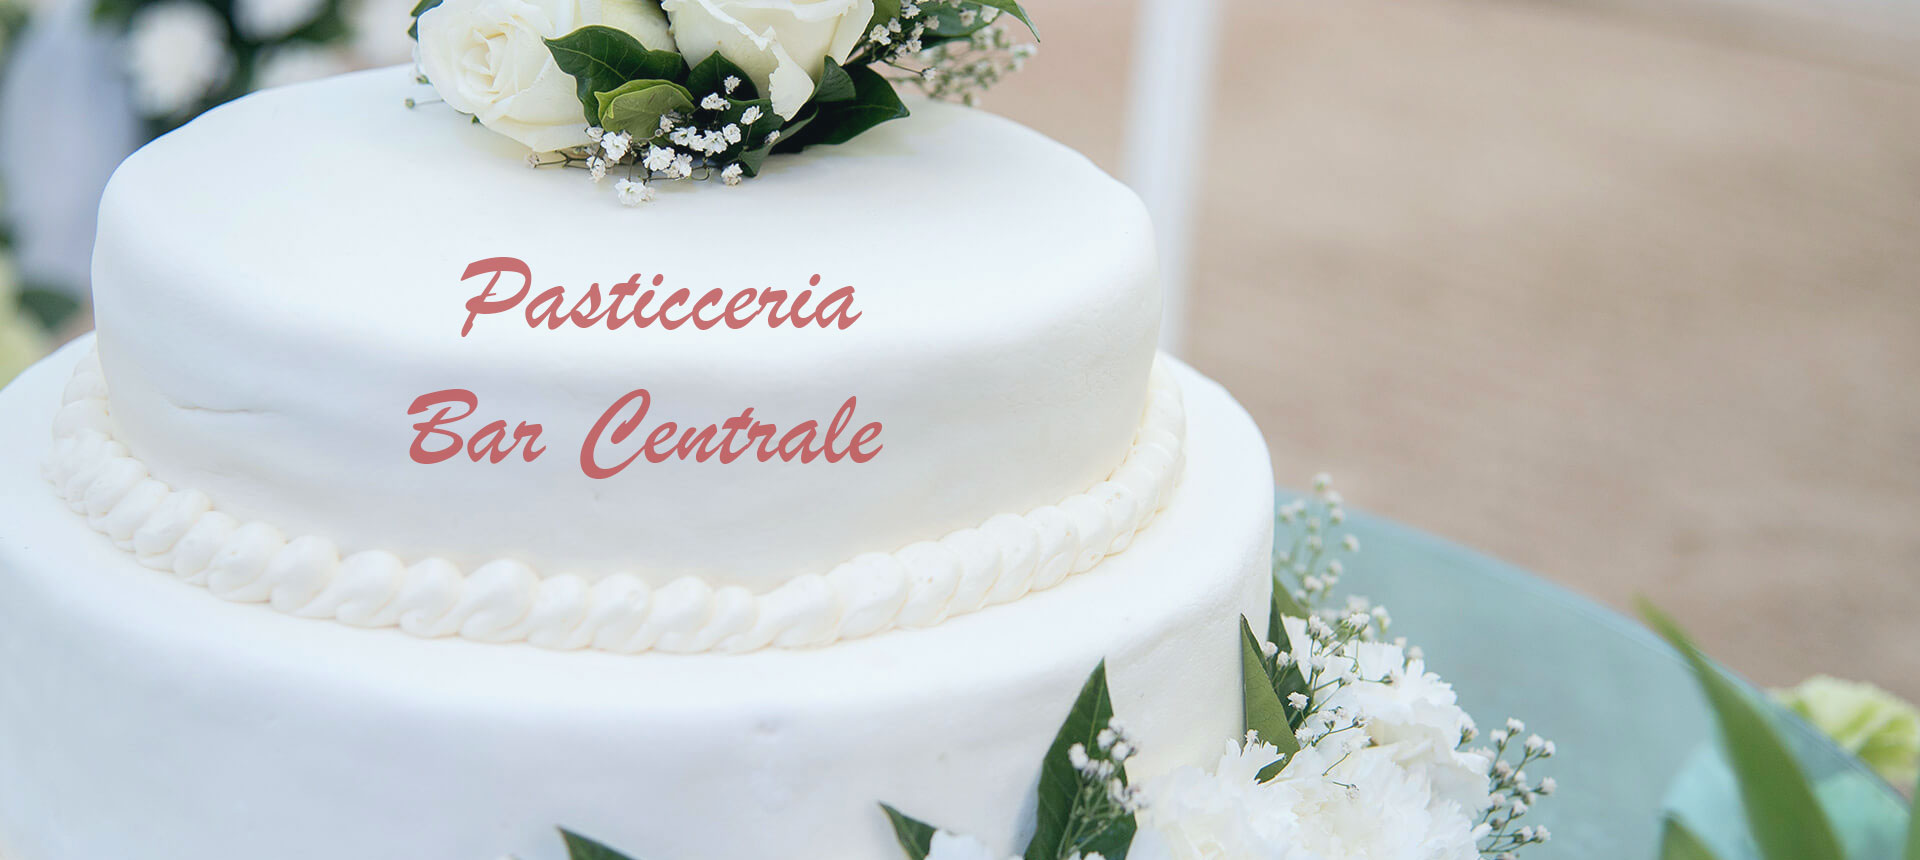 Pasticceria-Bar-Centrale-Anzola-dell’Emilia